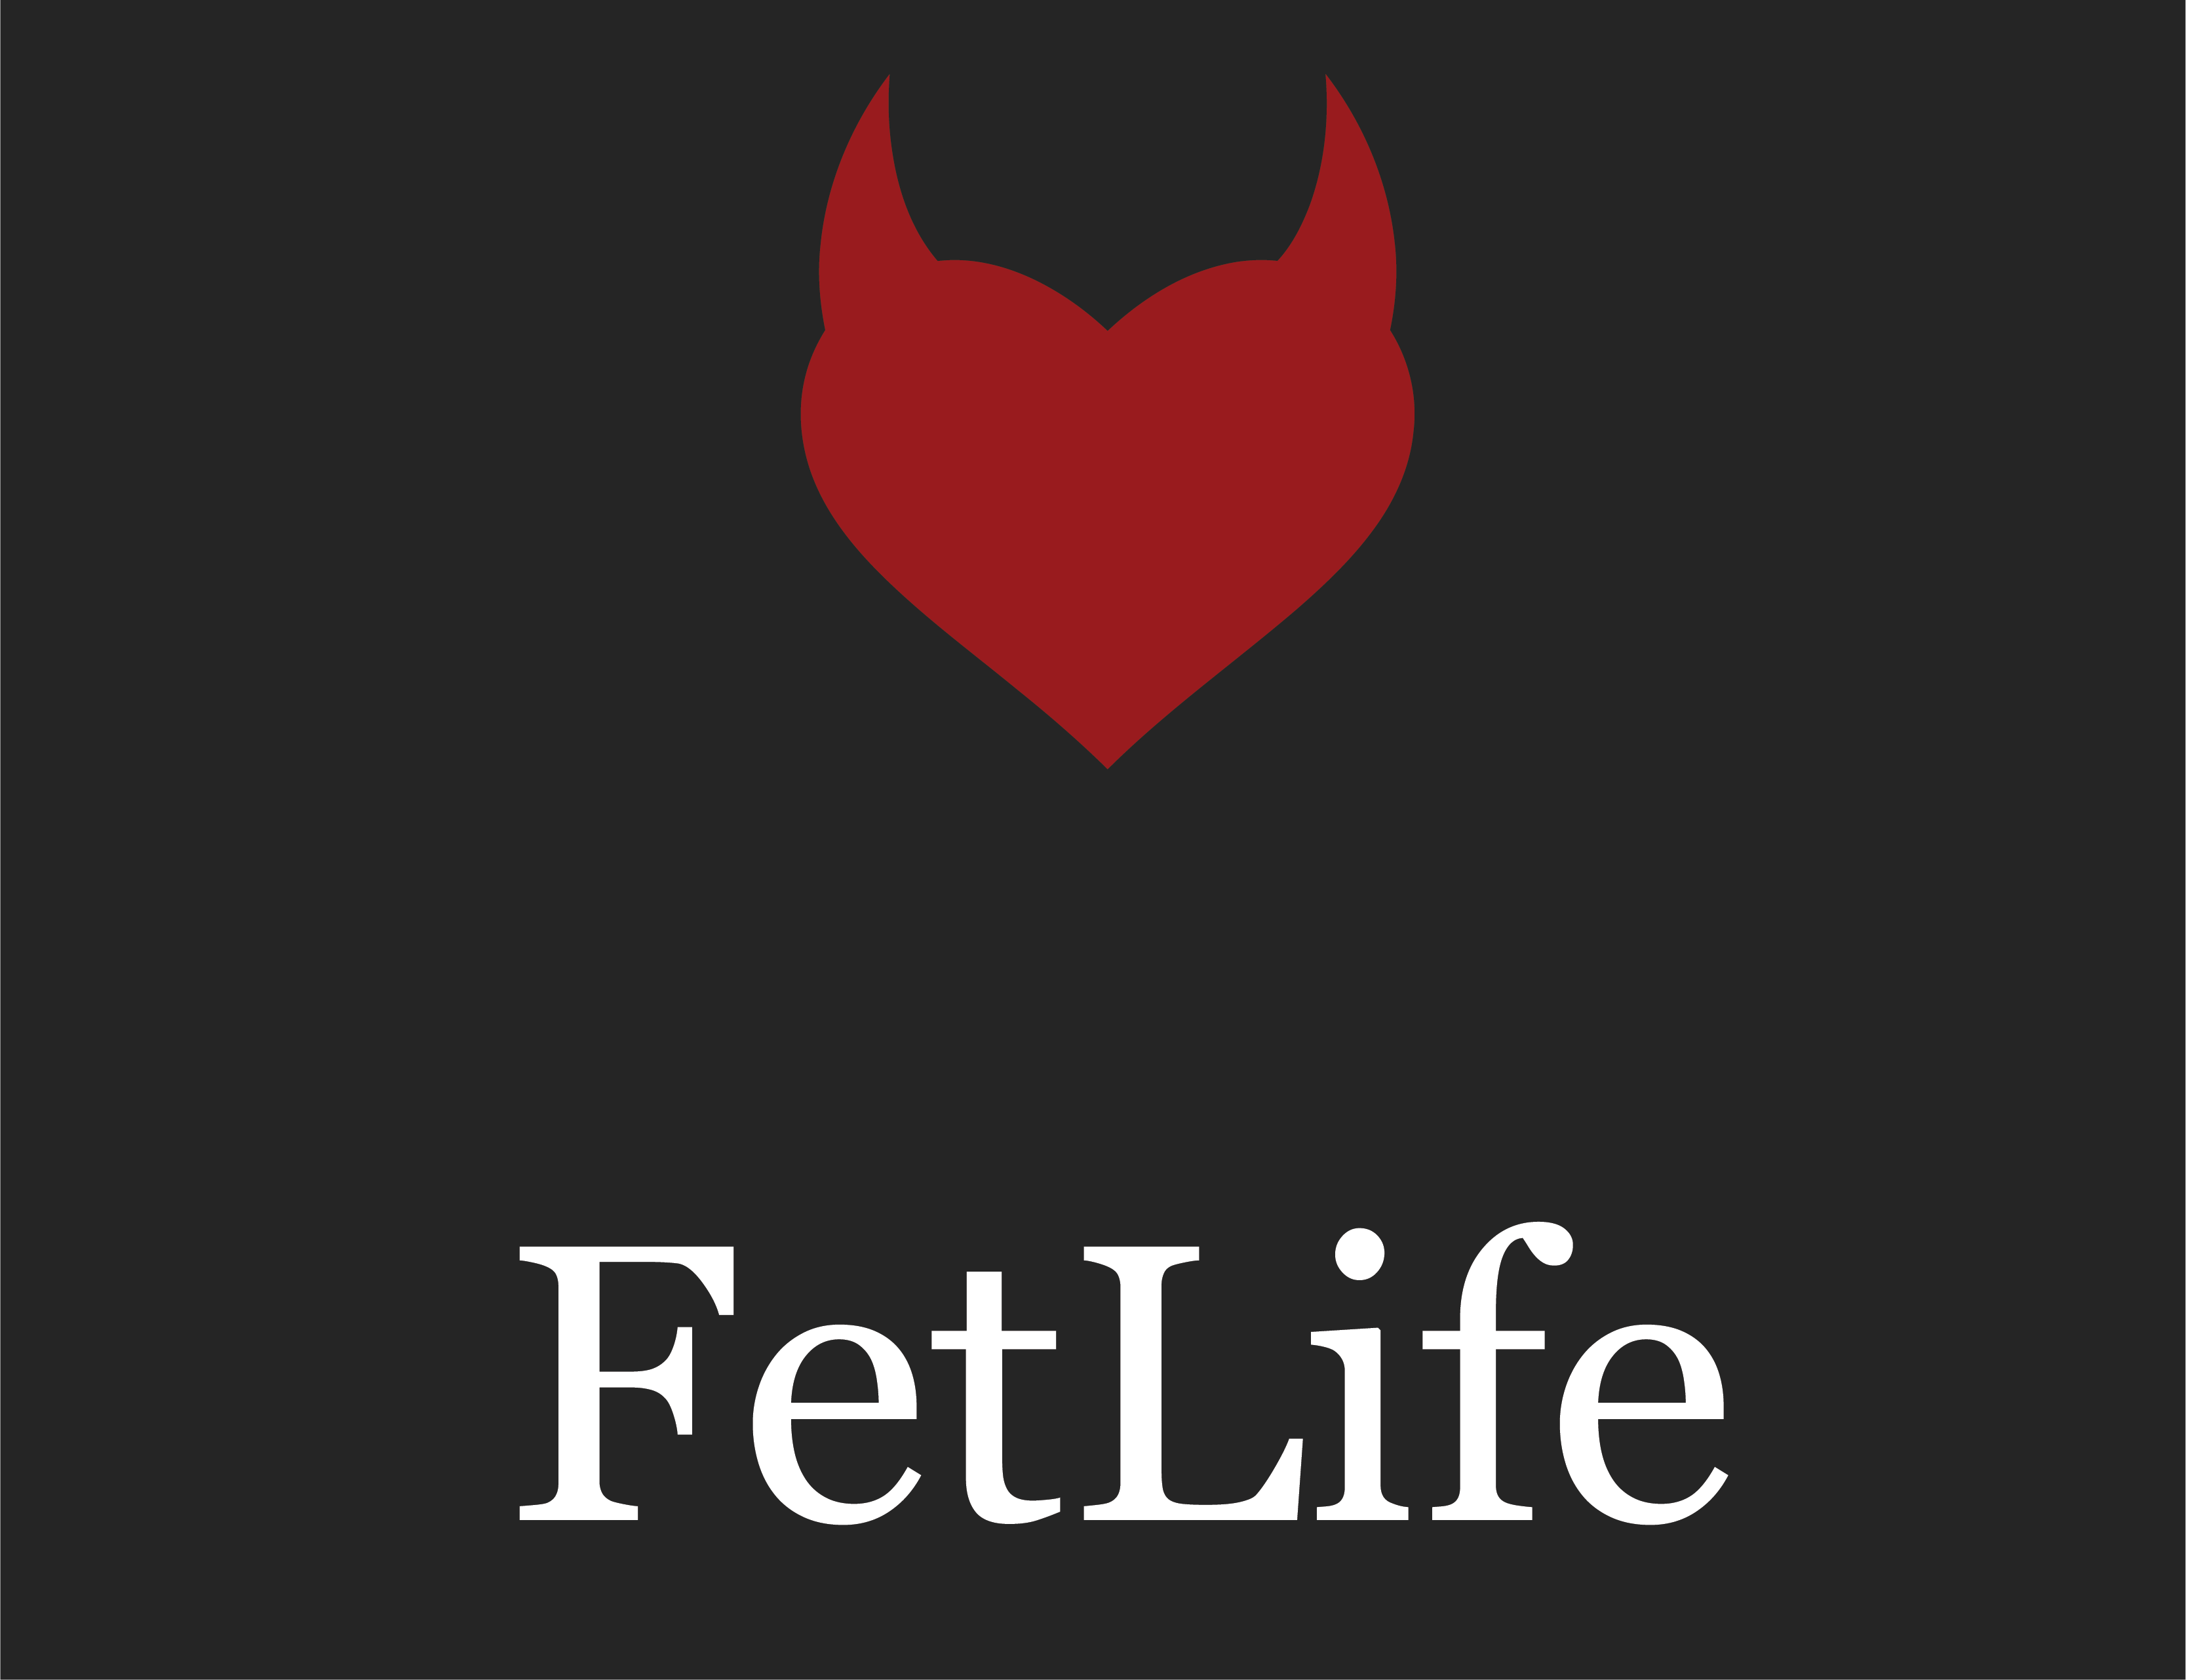 Search fetlife FetLife